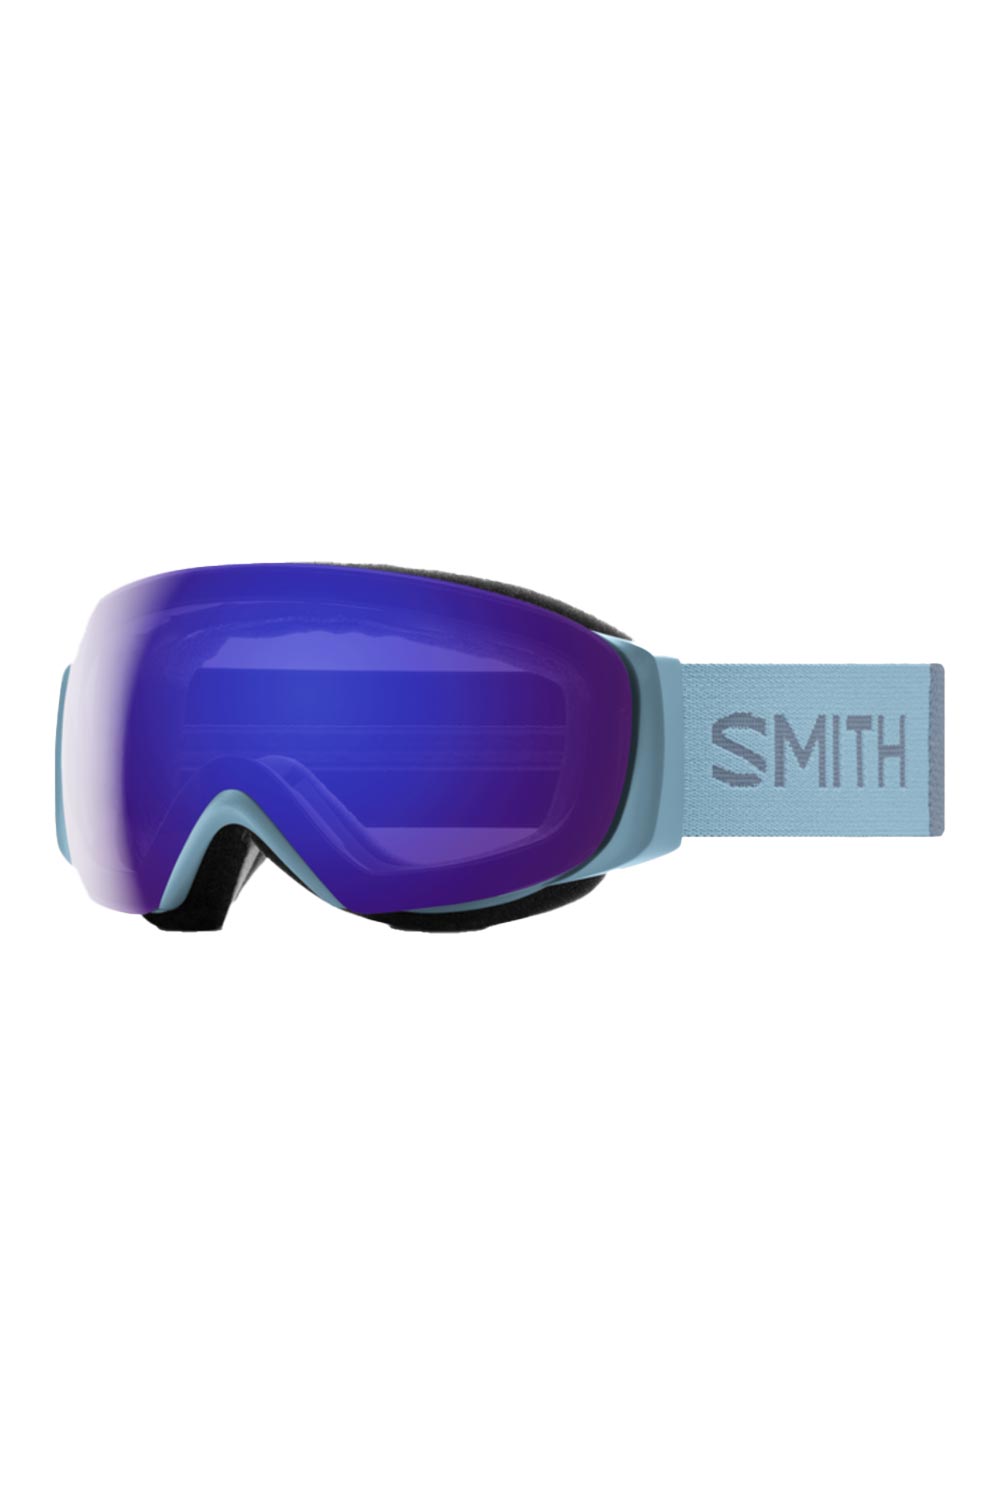 Smith ski goggles, blue strap and purple lens